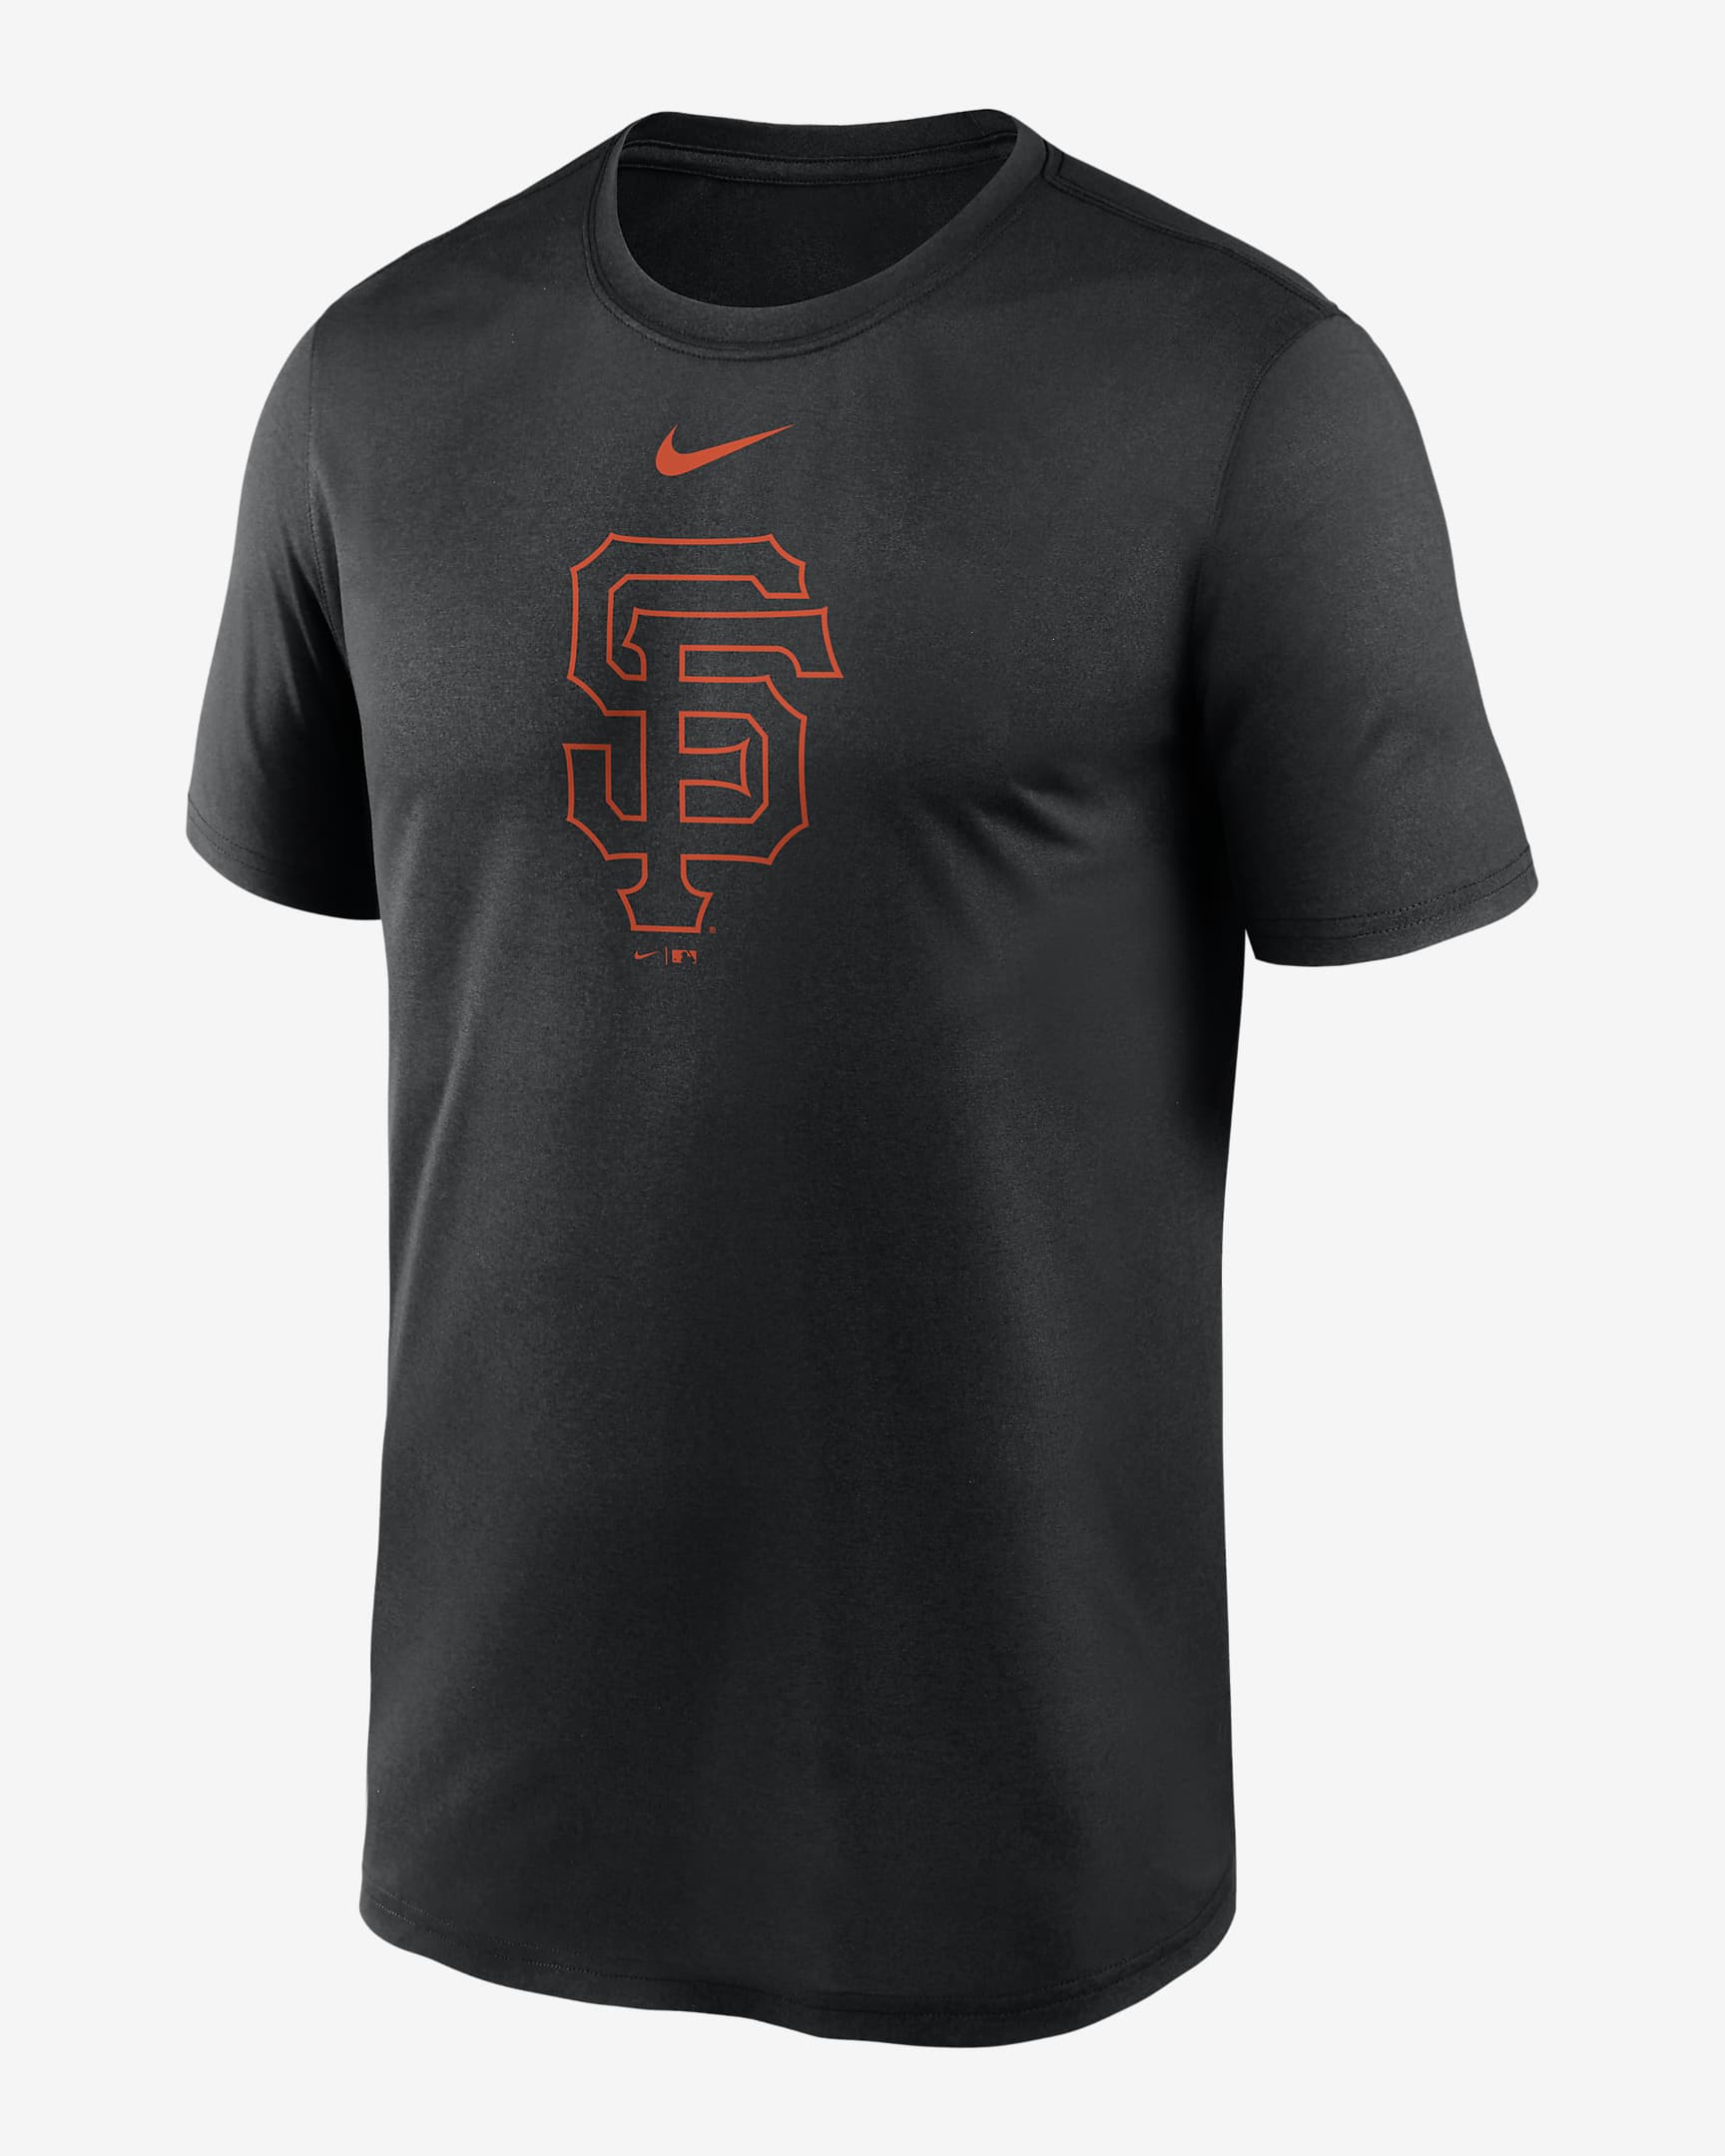 Nike Dri-FIT Logo Legend (MLB San Francisco Giants) Men's T-Shirt. Nike.com